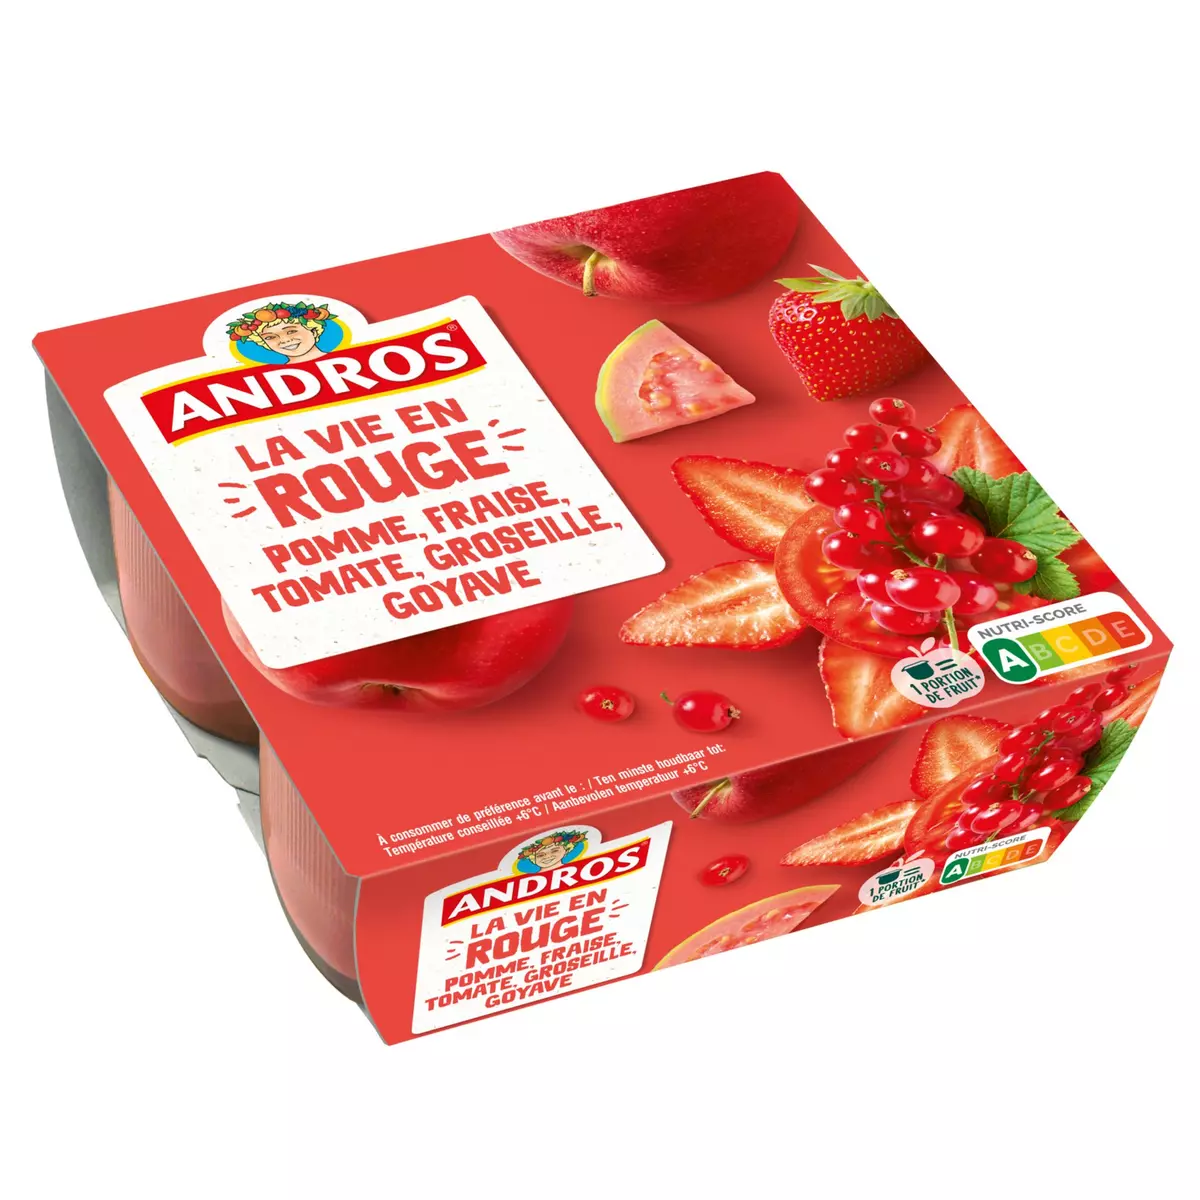 ANDROS La vie en rouge - Spécialité pomme fraise tomate groseille goyave 4x100g